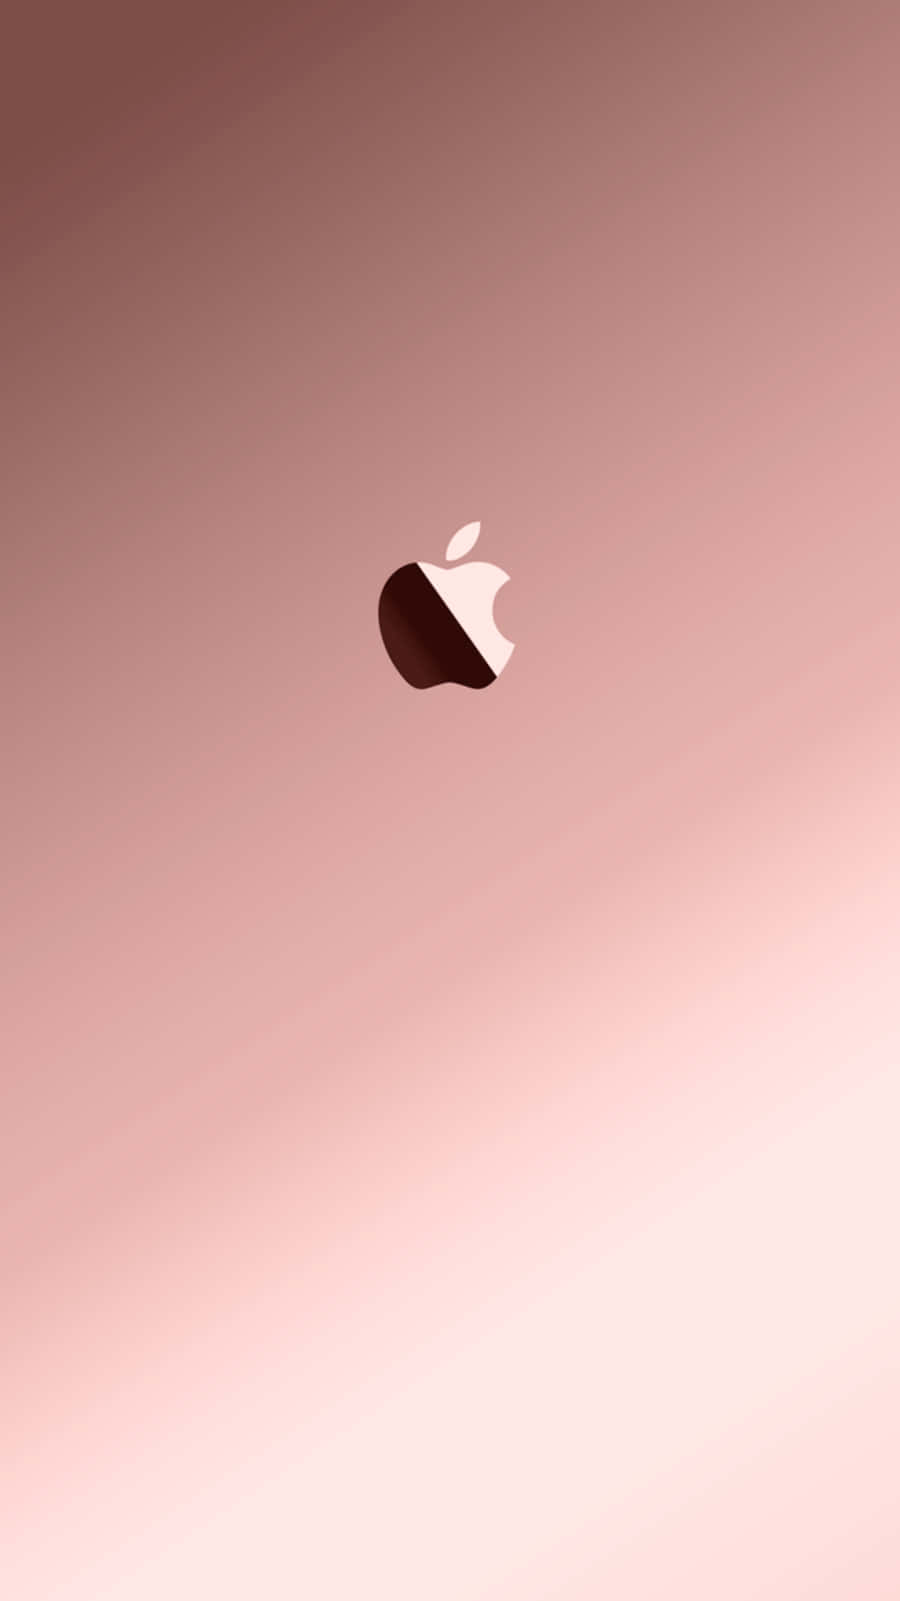 Half Light And Dark Logo Rose Gold Apple Wallpaper